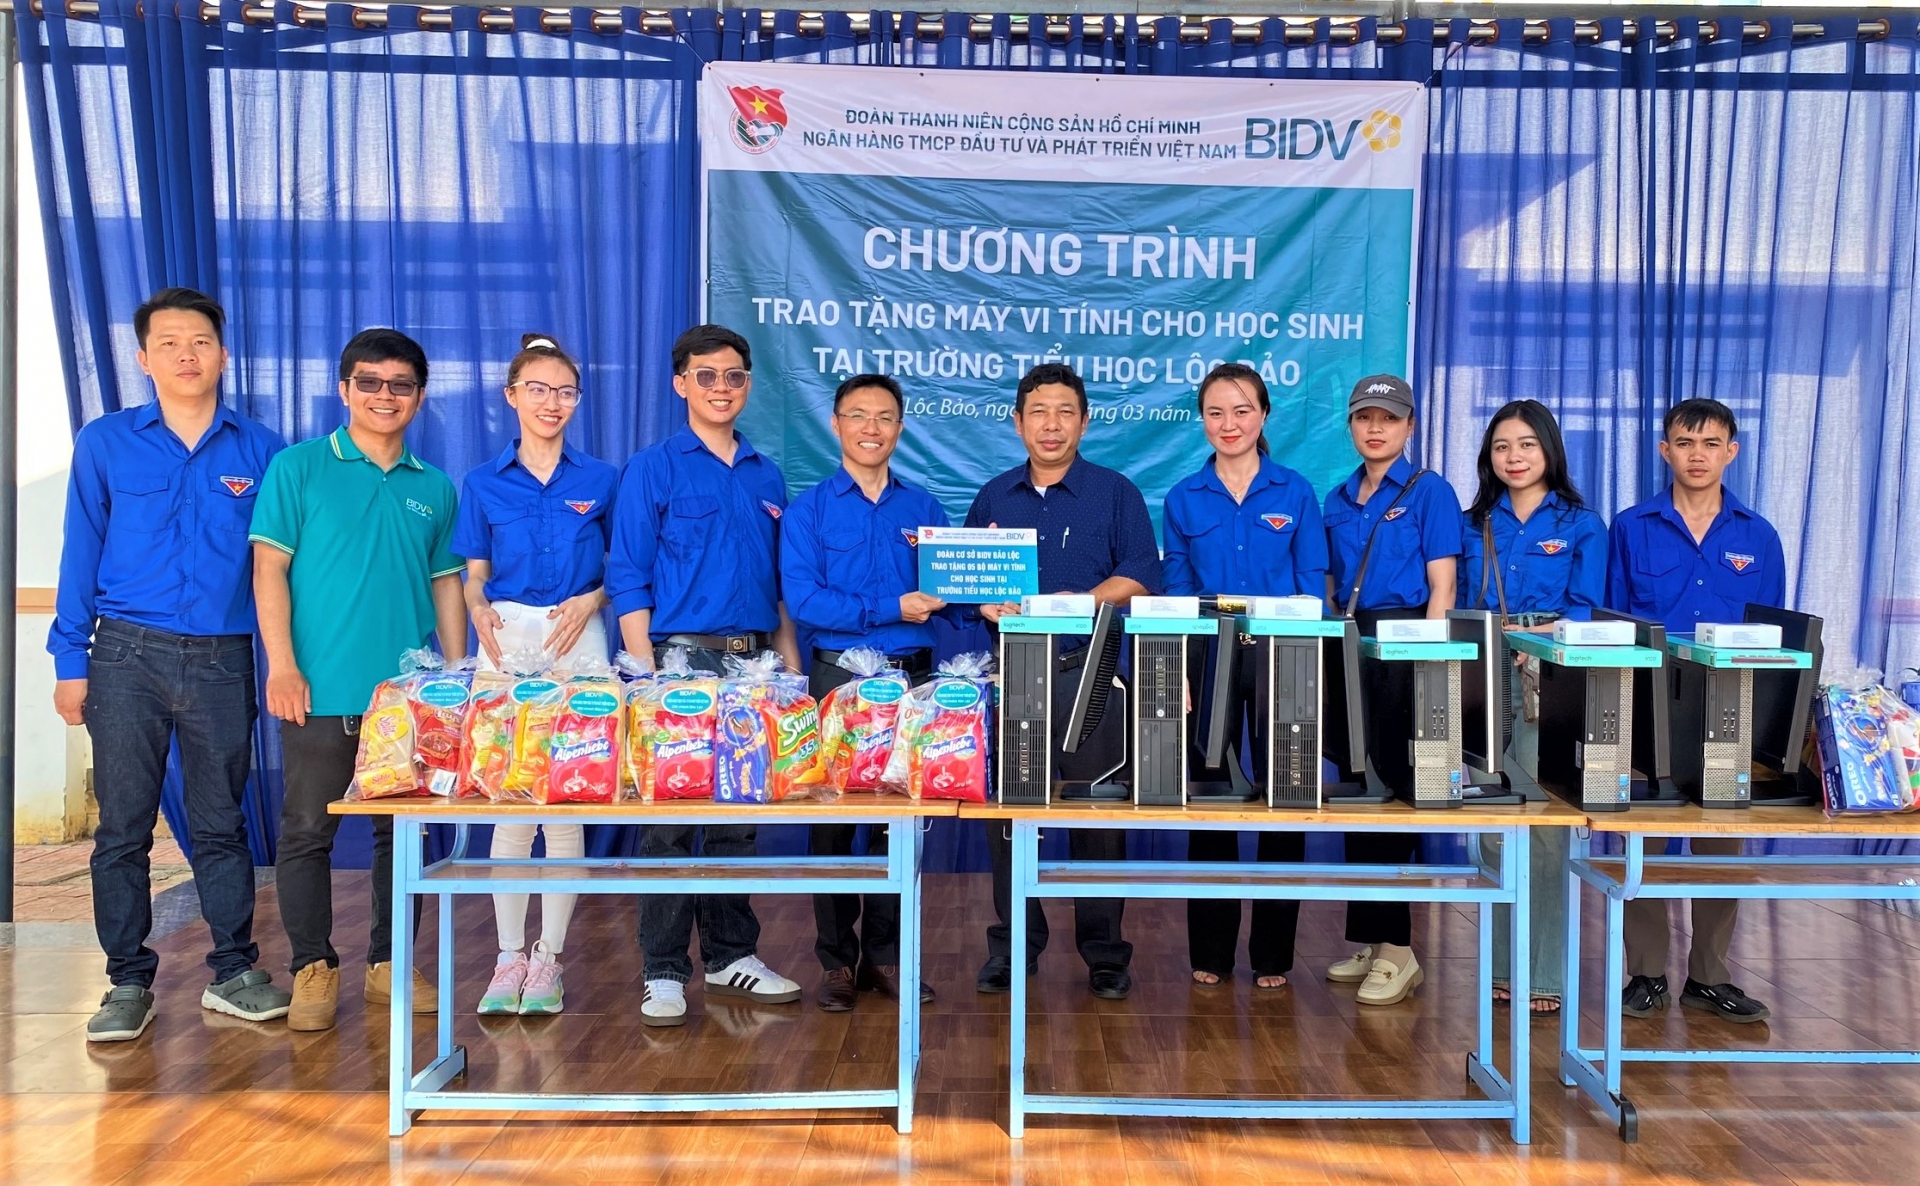 Trao tặng 10 bộ máy vi tính cho học sinh vùng xa 2 huyện Bảo Lâm và Di Linh